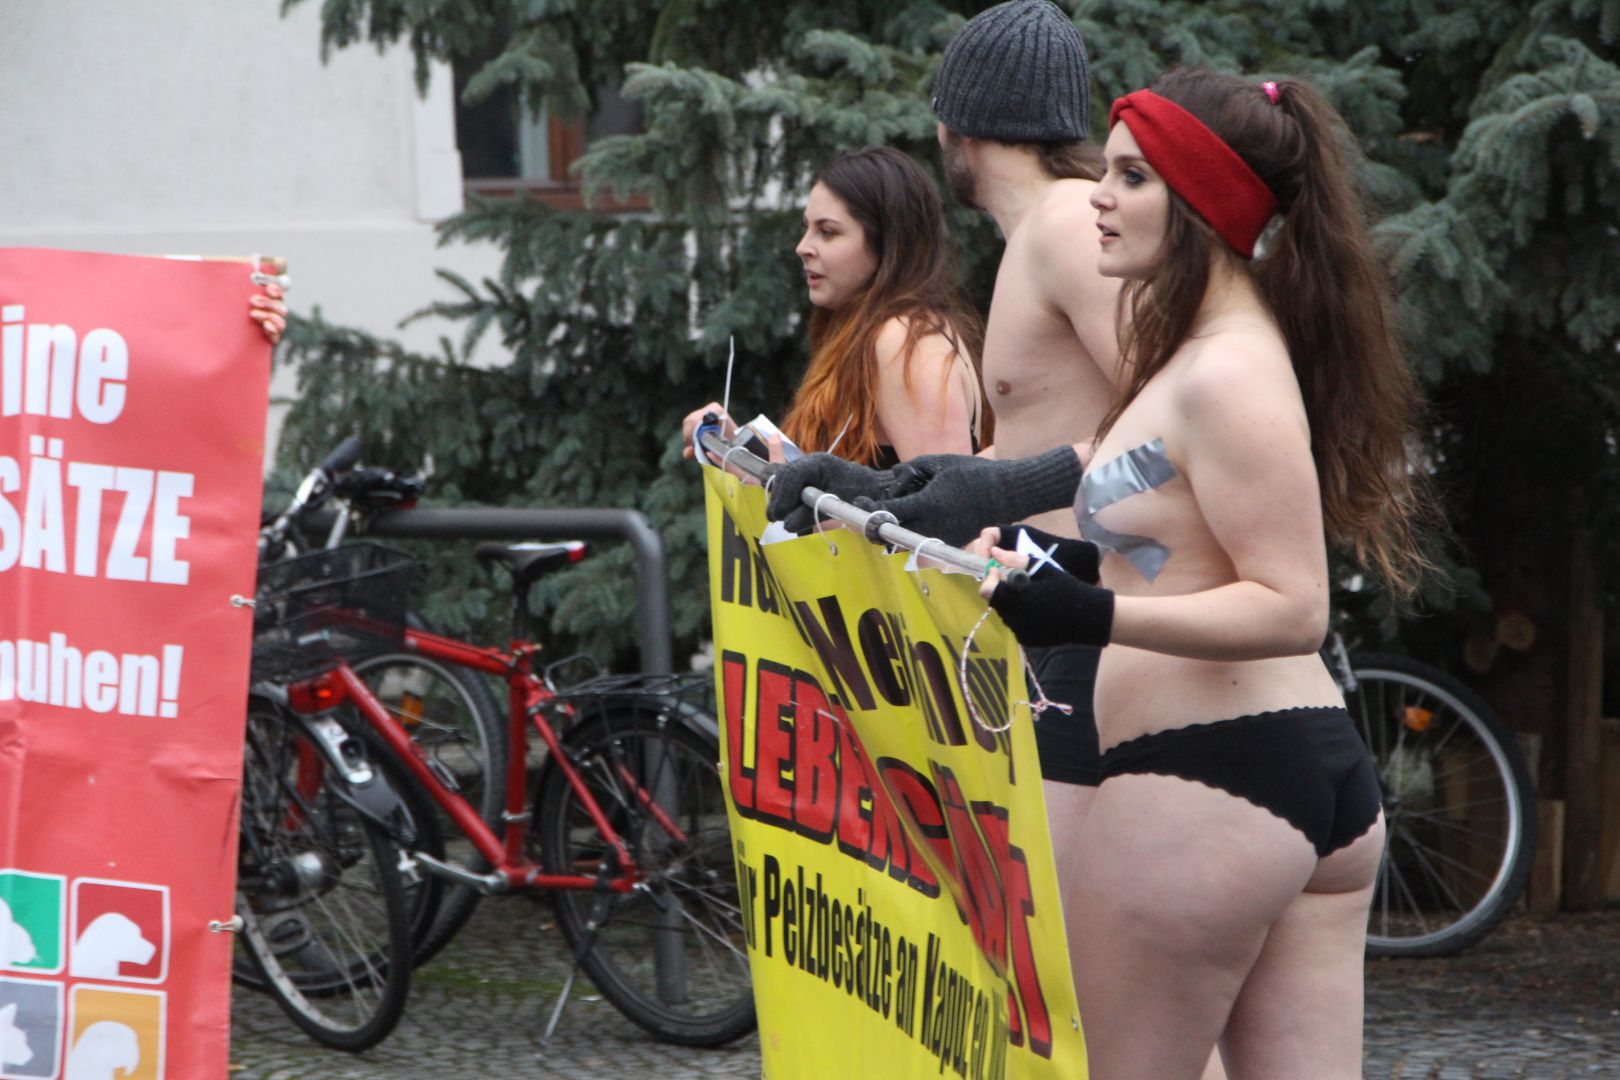 Frankfurter girl splitter nackt beim public viewing